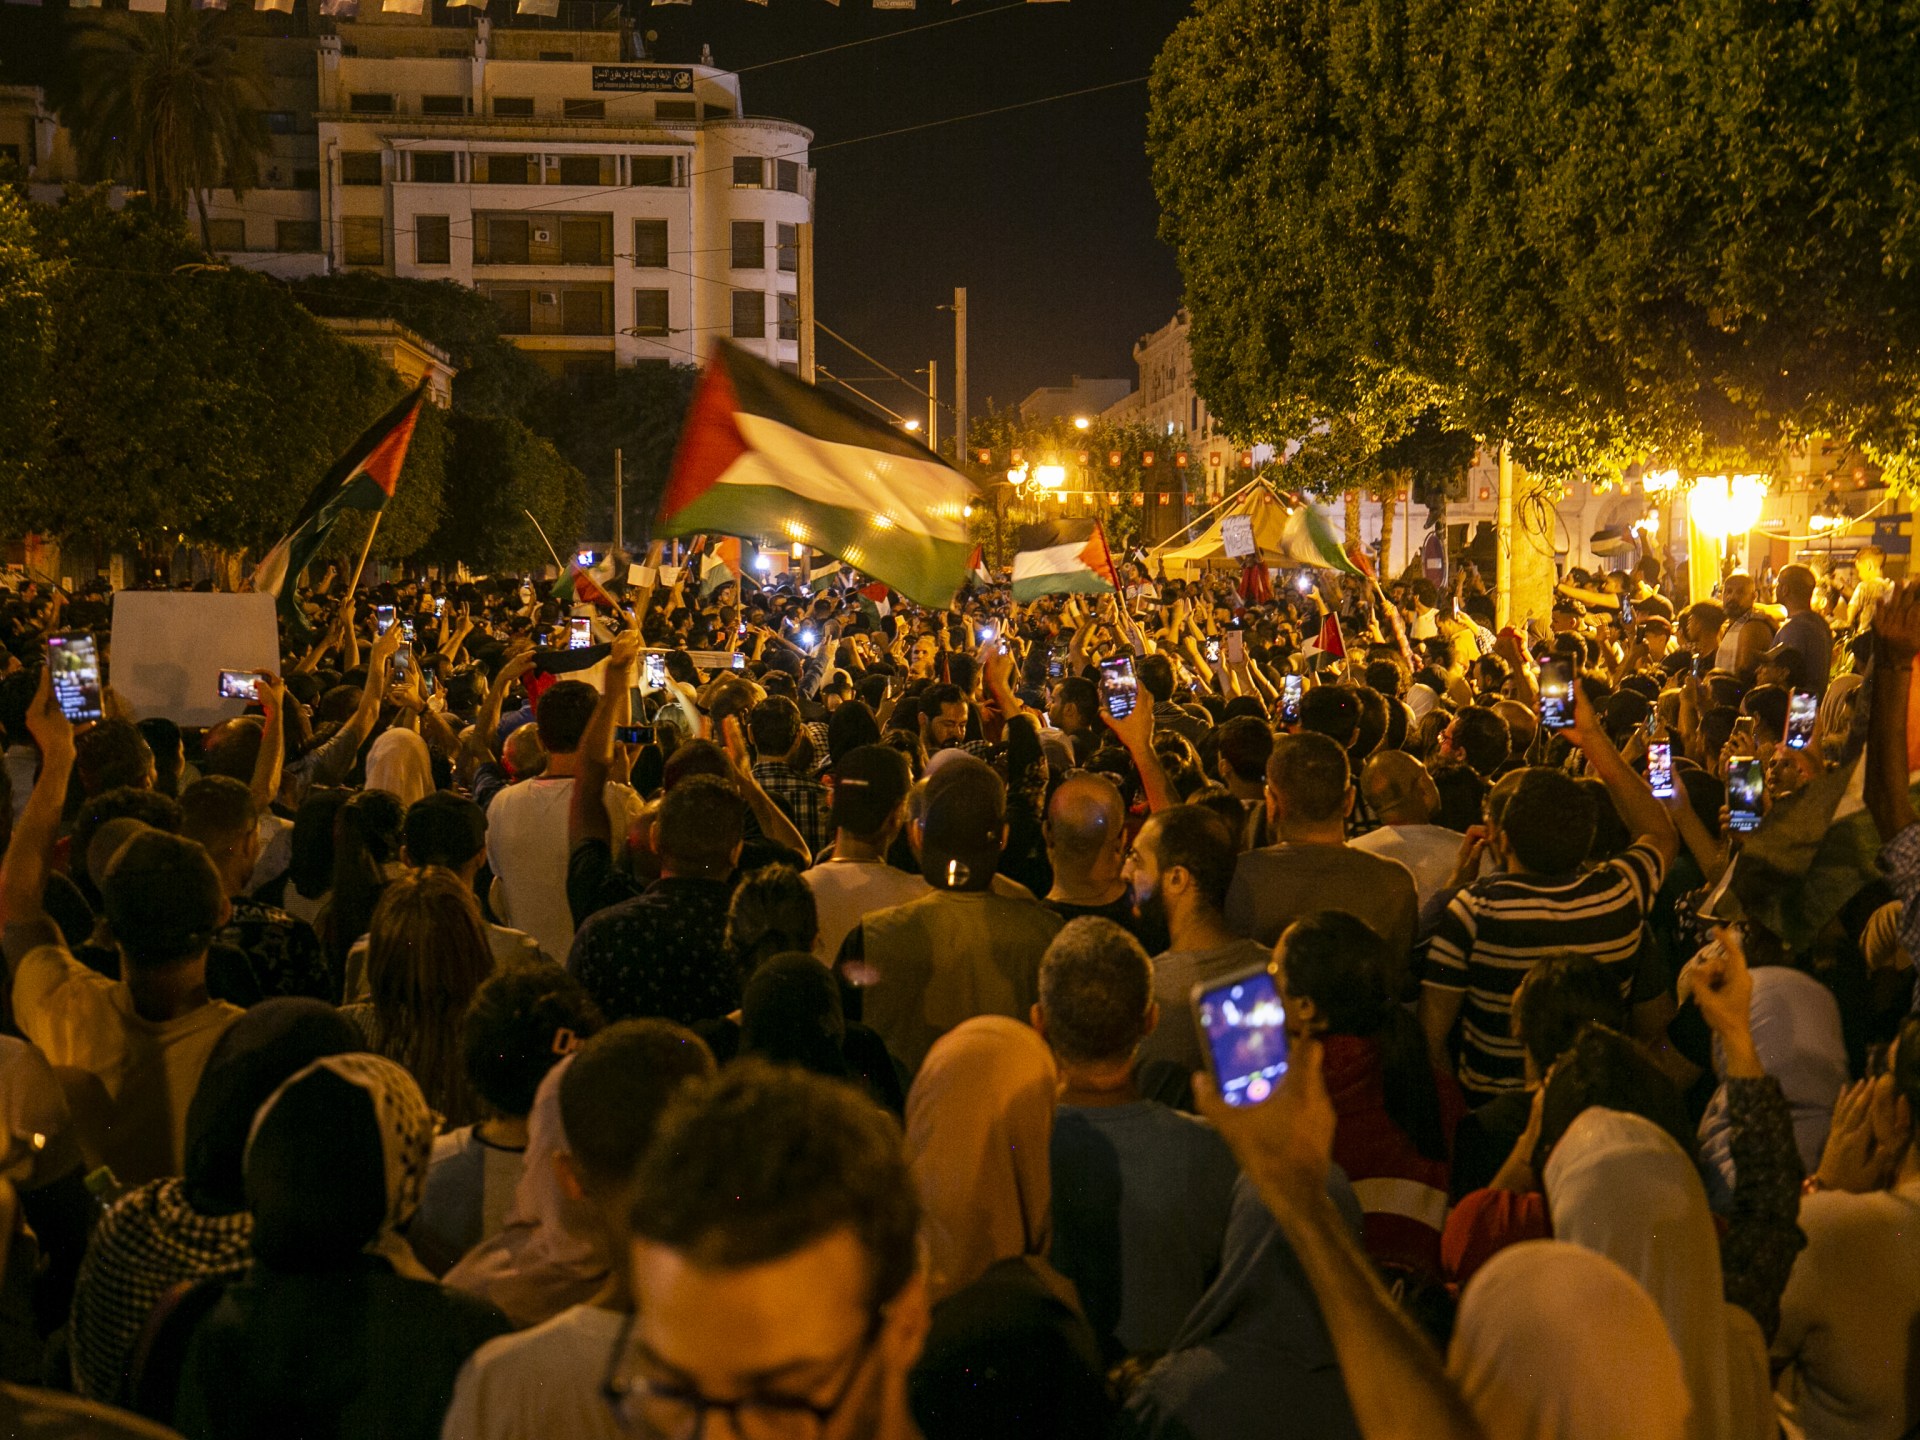 مظاهرات ليلية بأرجاء العالم تندد بمجزرة المستشفى في غزة | أخبار – البوكس نيوز